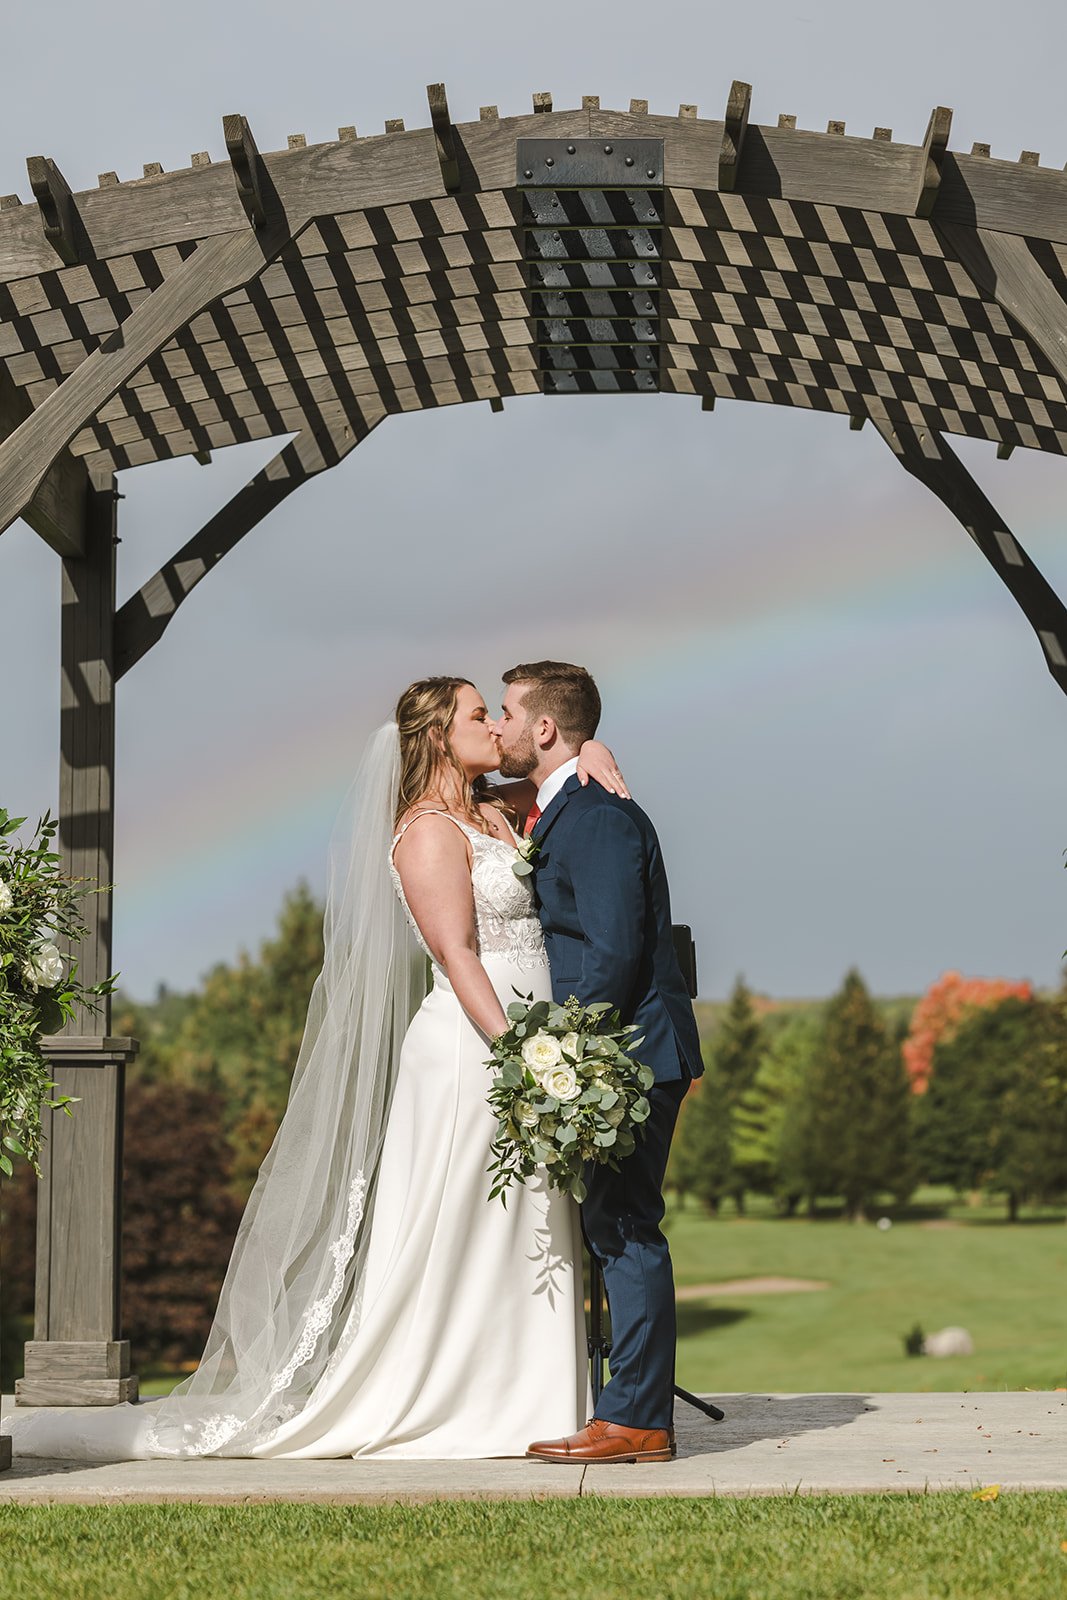 Wedding under a rainbow photo by Fedora Media